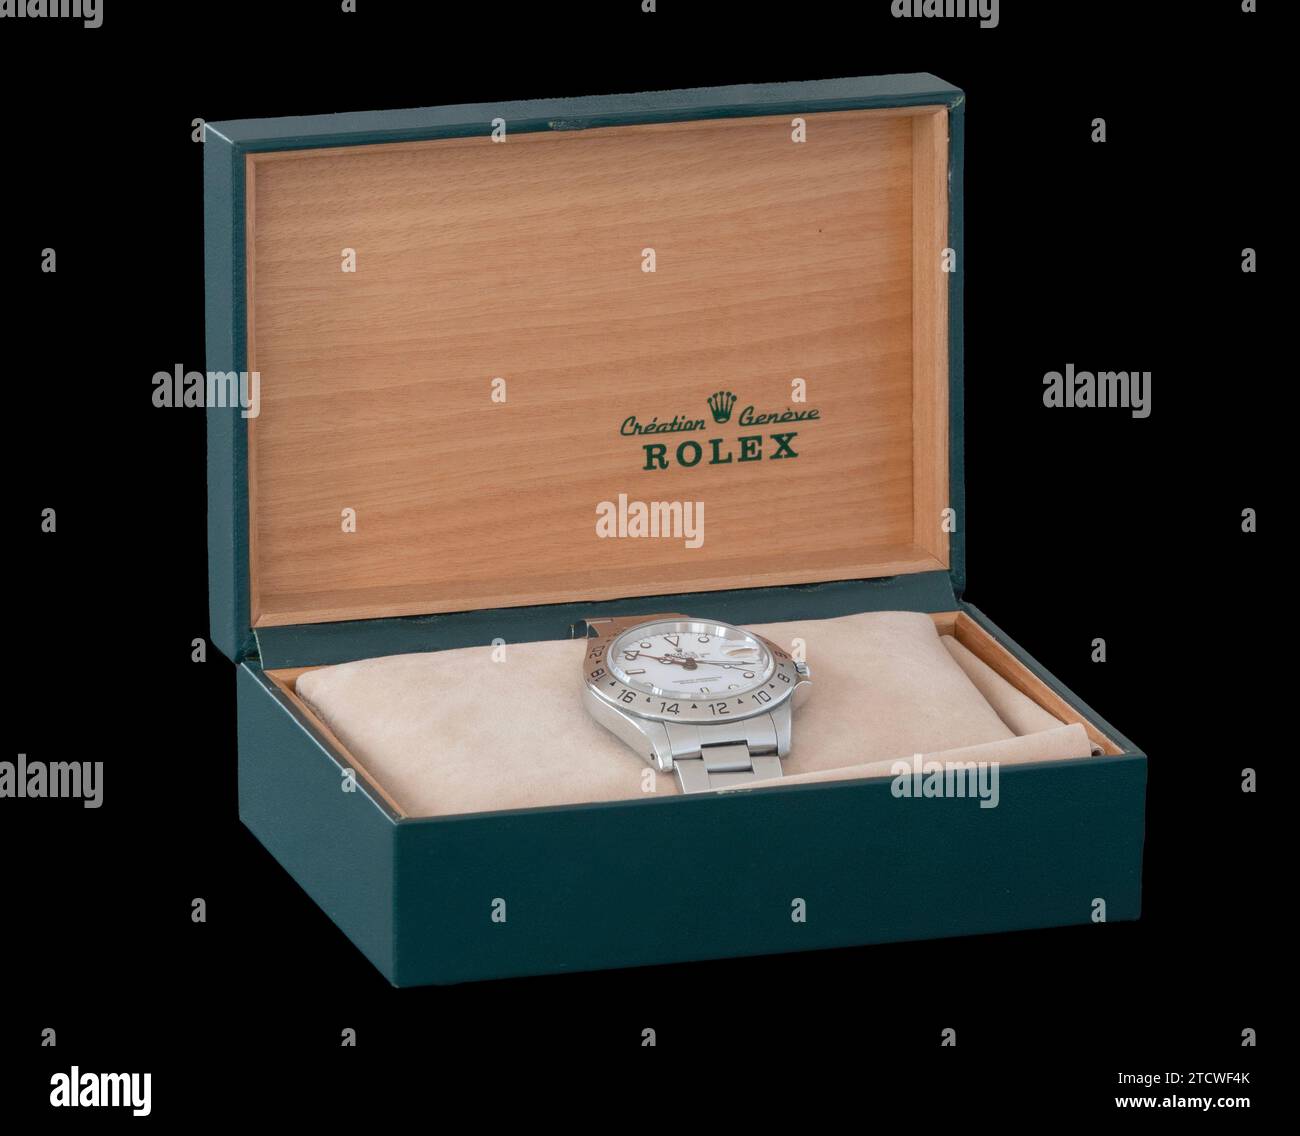 Boîte d'affichage avec une montre-bracelet Rolex Oyster de Rolex un horloger suisse de montres de luxe. Ispolated sur fond noir. Copenhague, Danemark - octobre Banque D'Images